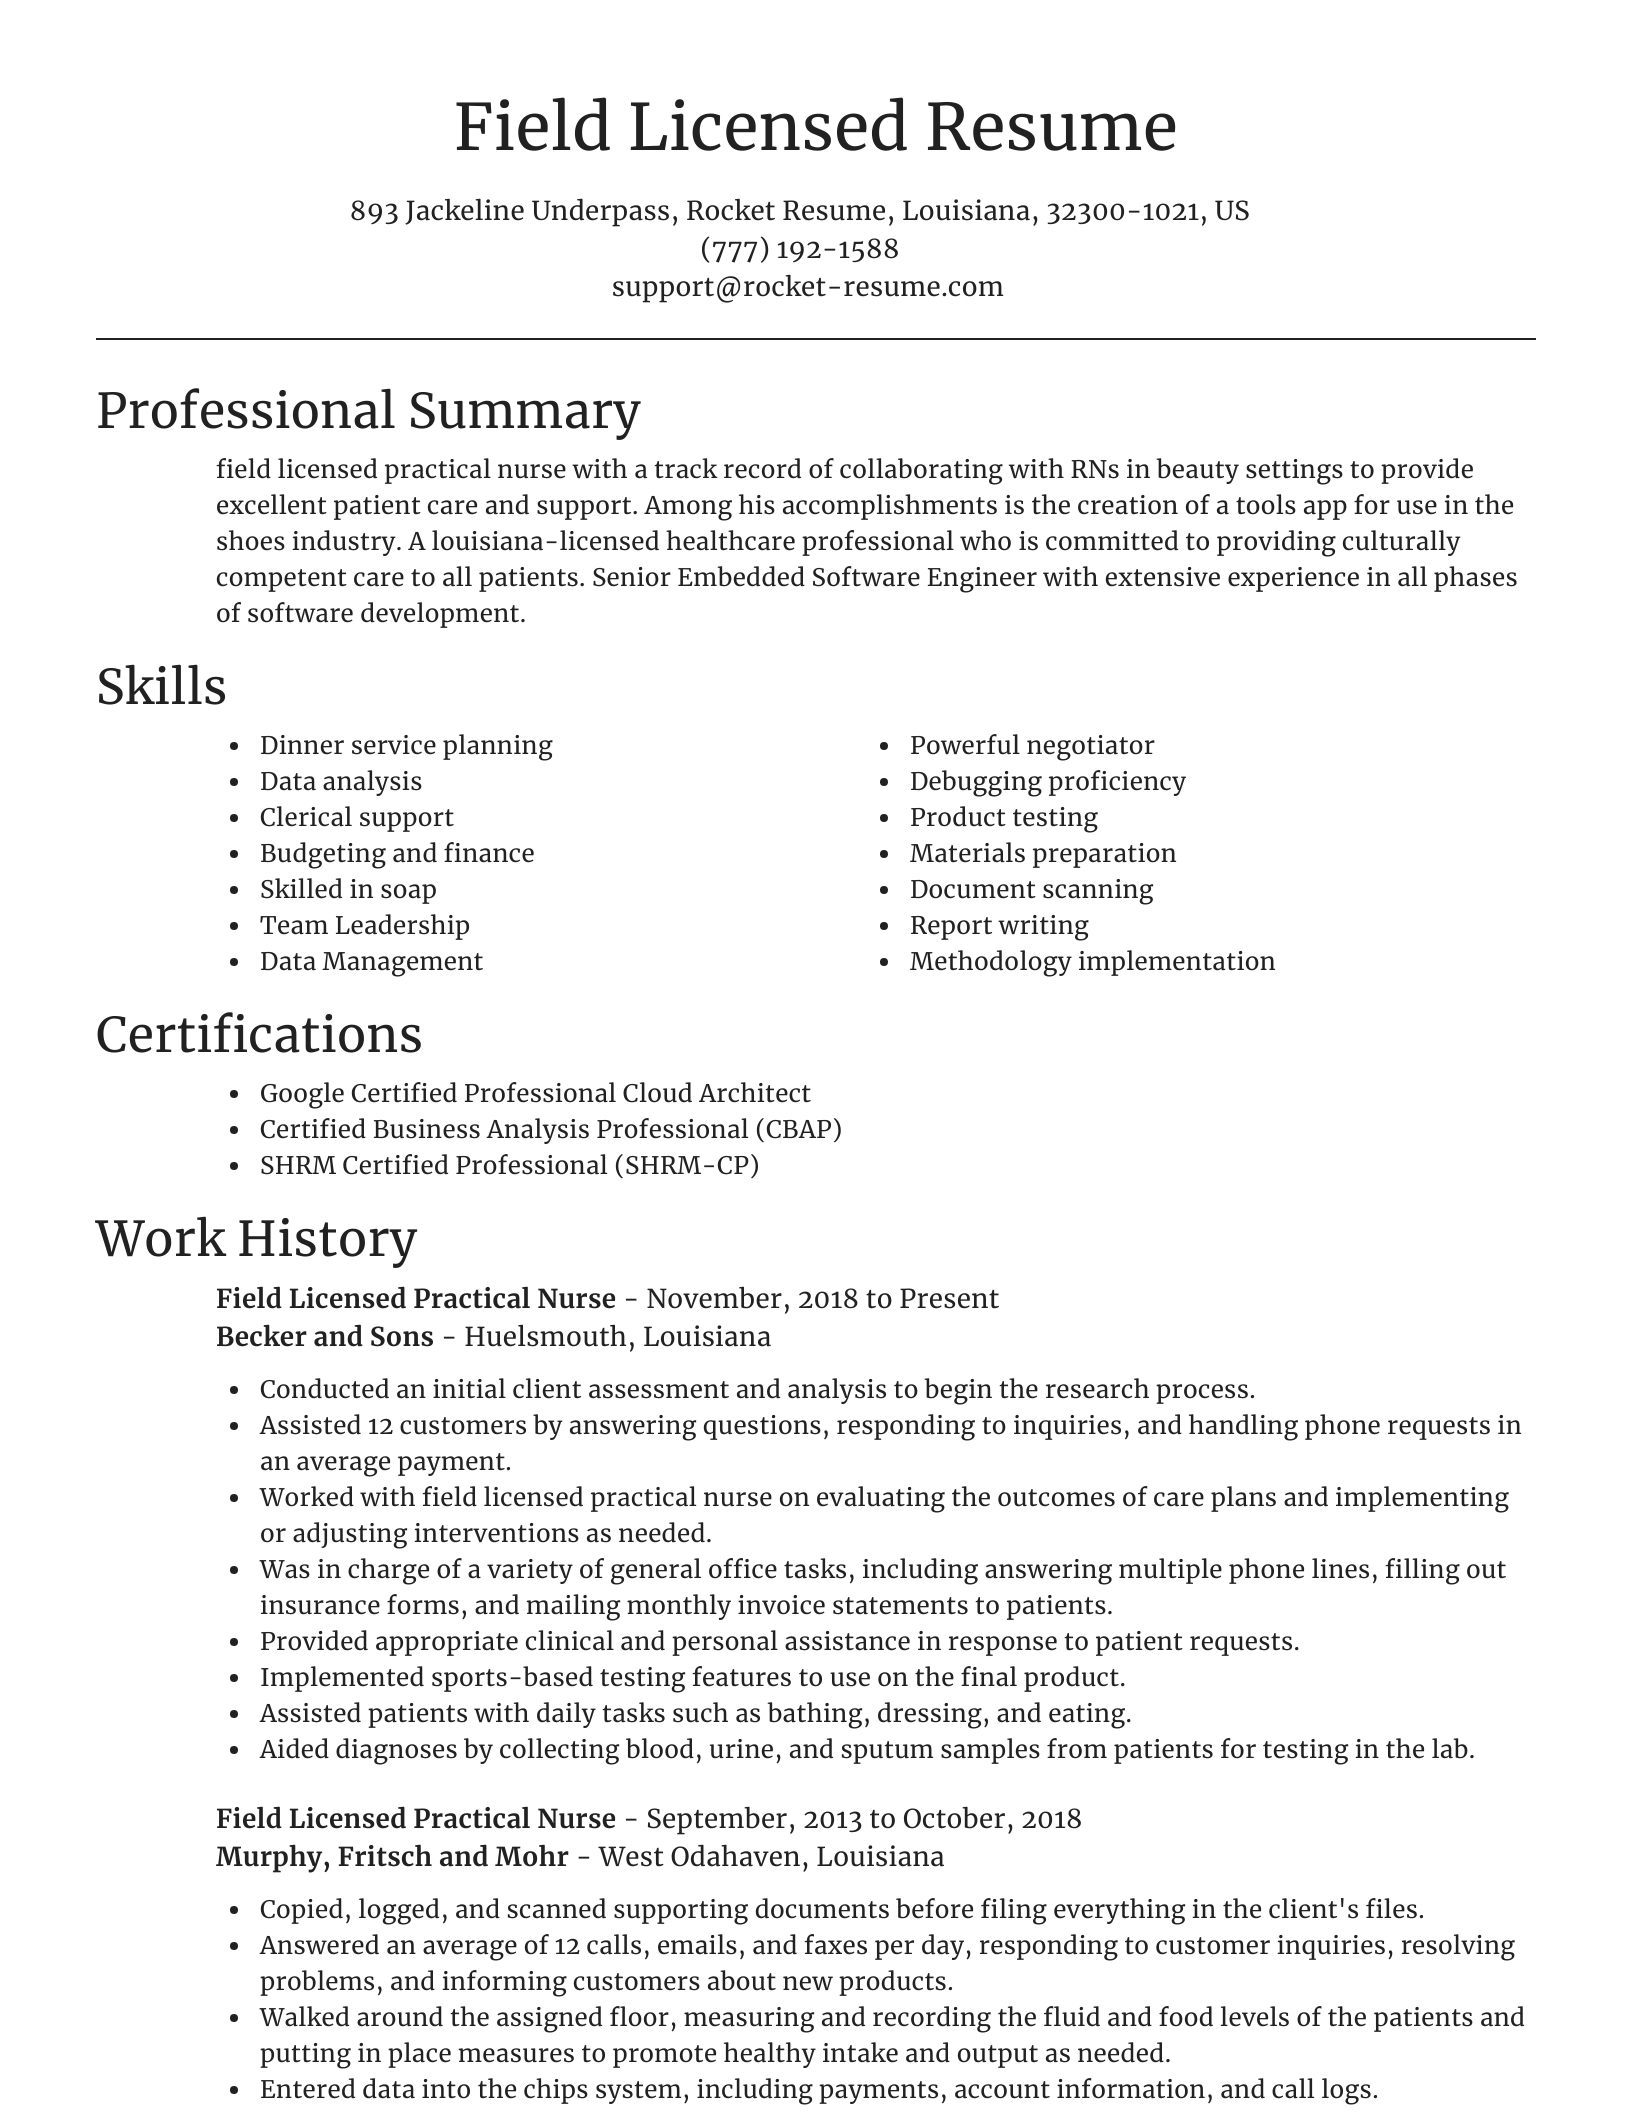 Field Licensed Practical Nurse Resumes | Rocket Resume